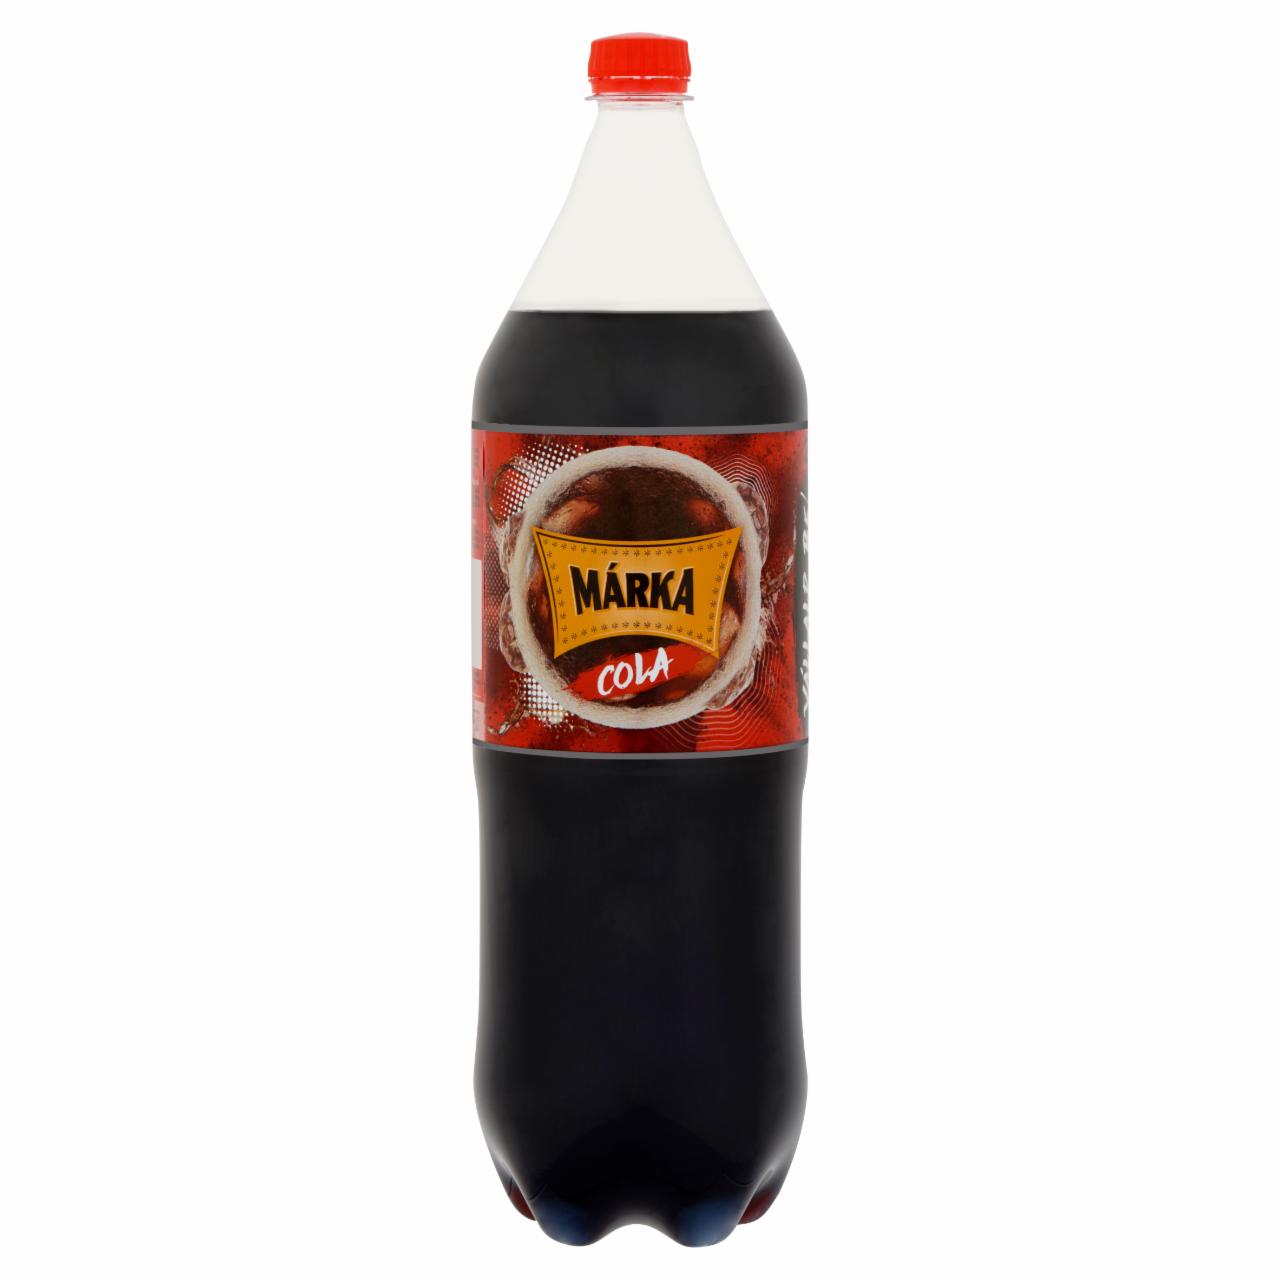 Képek - Márka cola ízű szénsavas üdítőital, cukorral és édesítőszerekkel 2 l